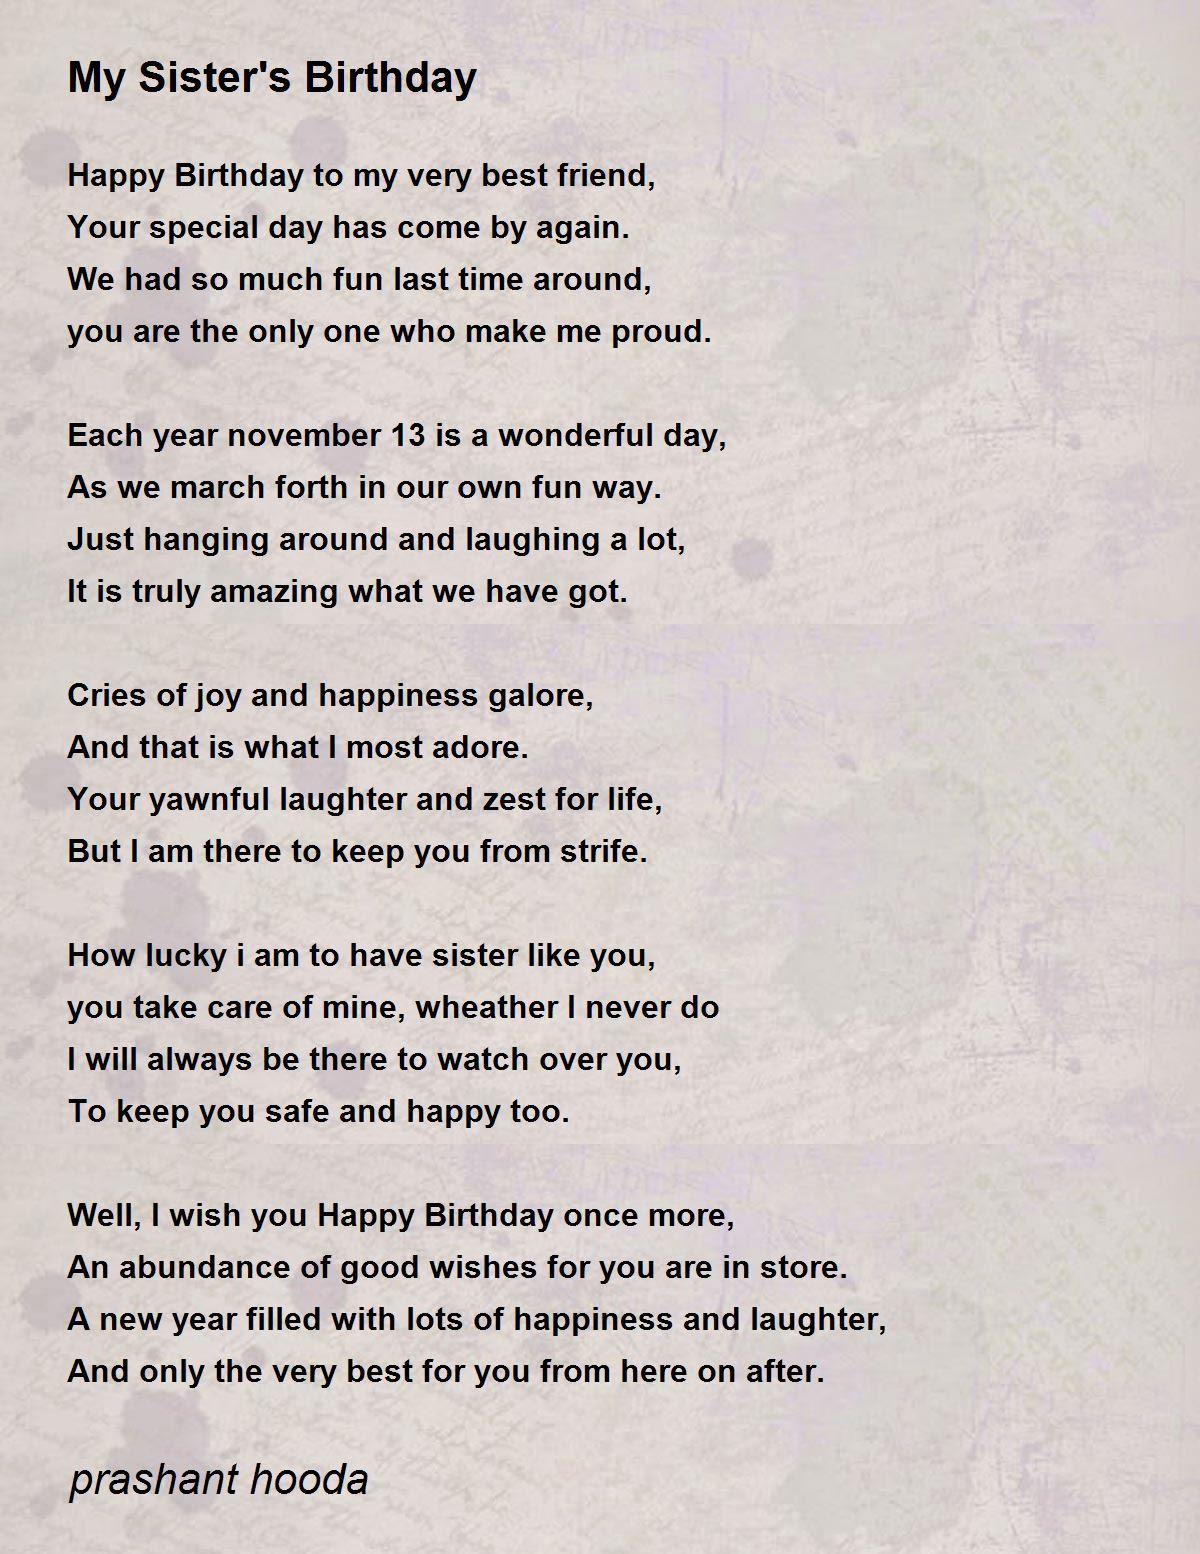 My Sister's Birthday - My Sister's Birthday Poem by prashant hooda